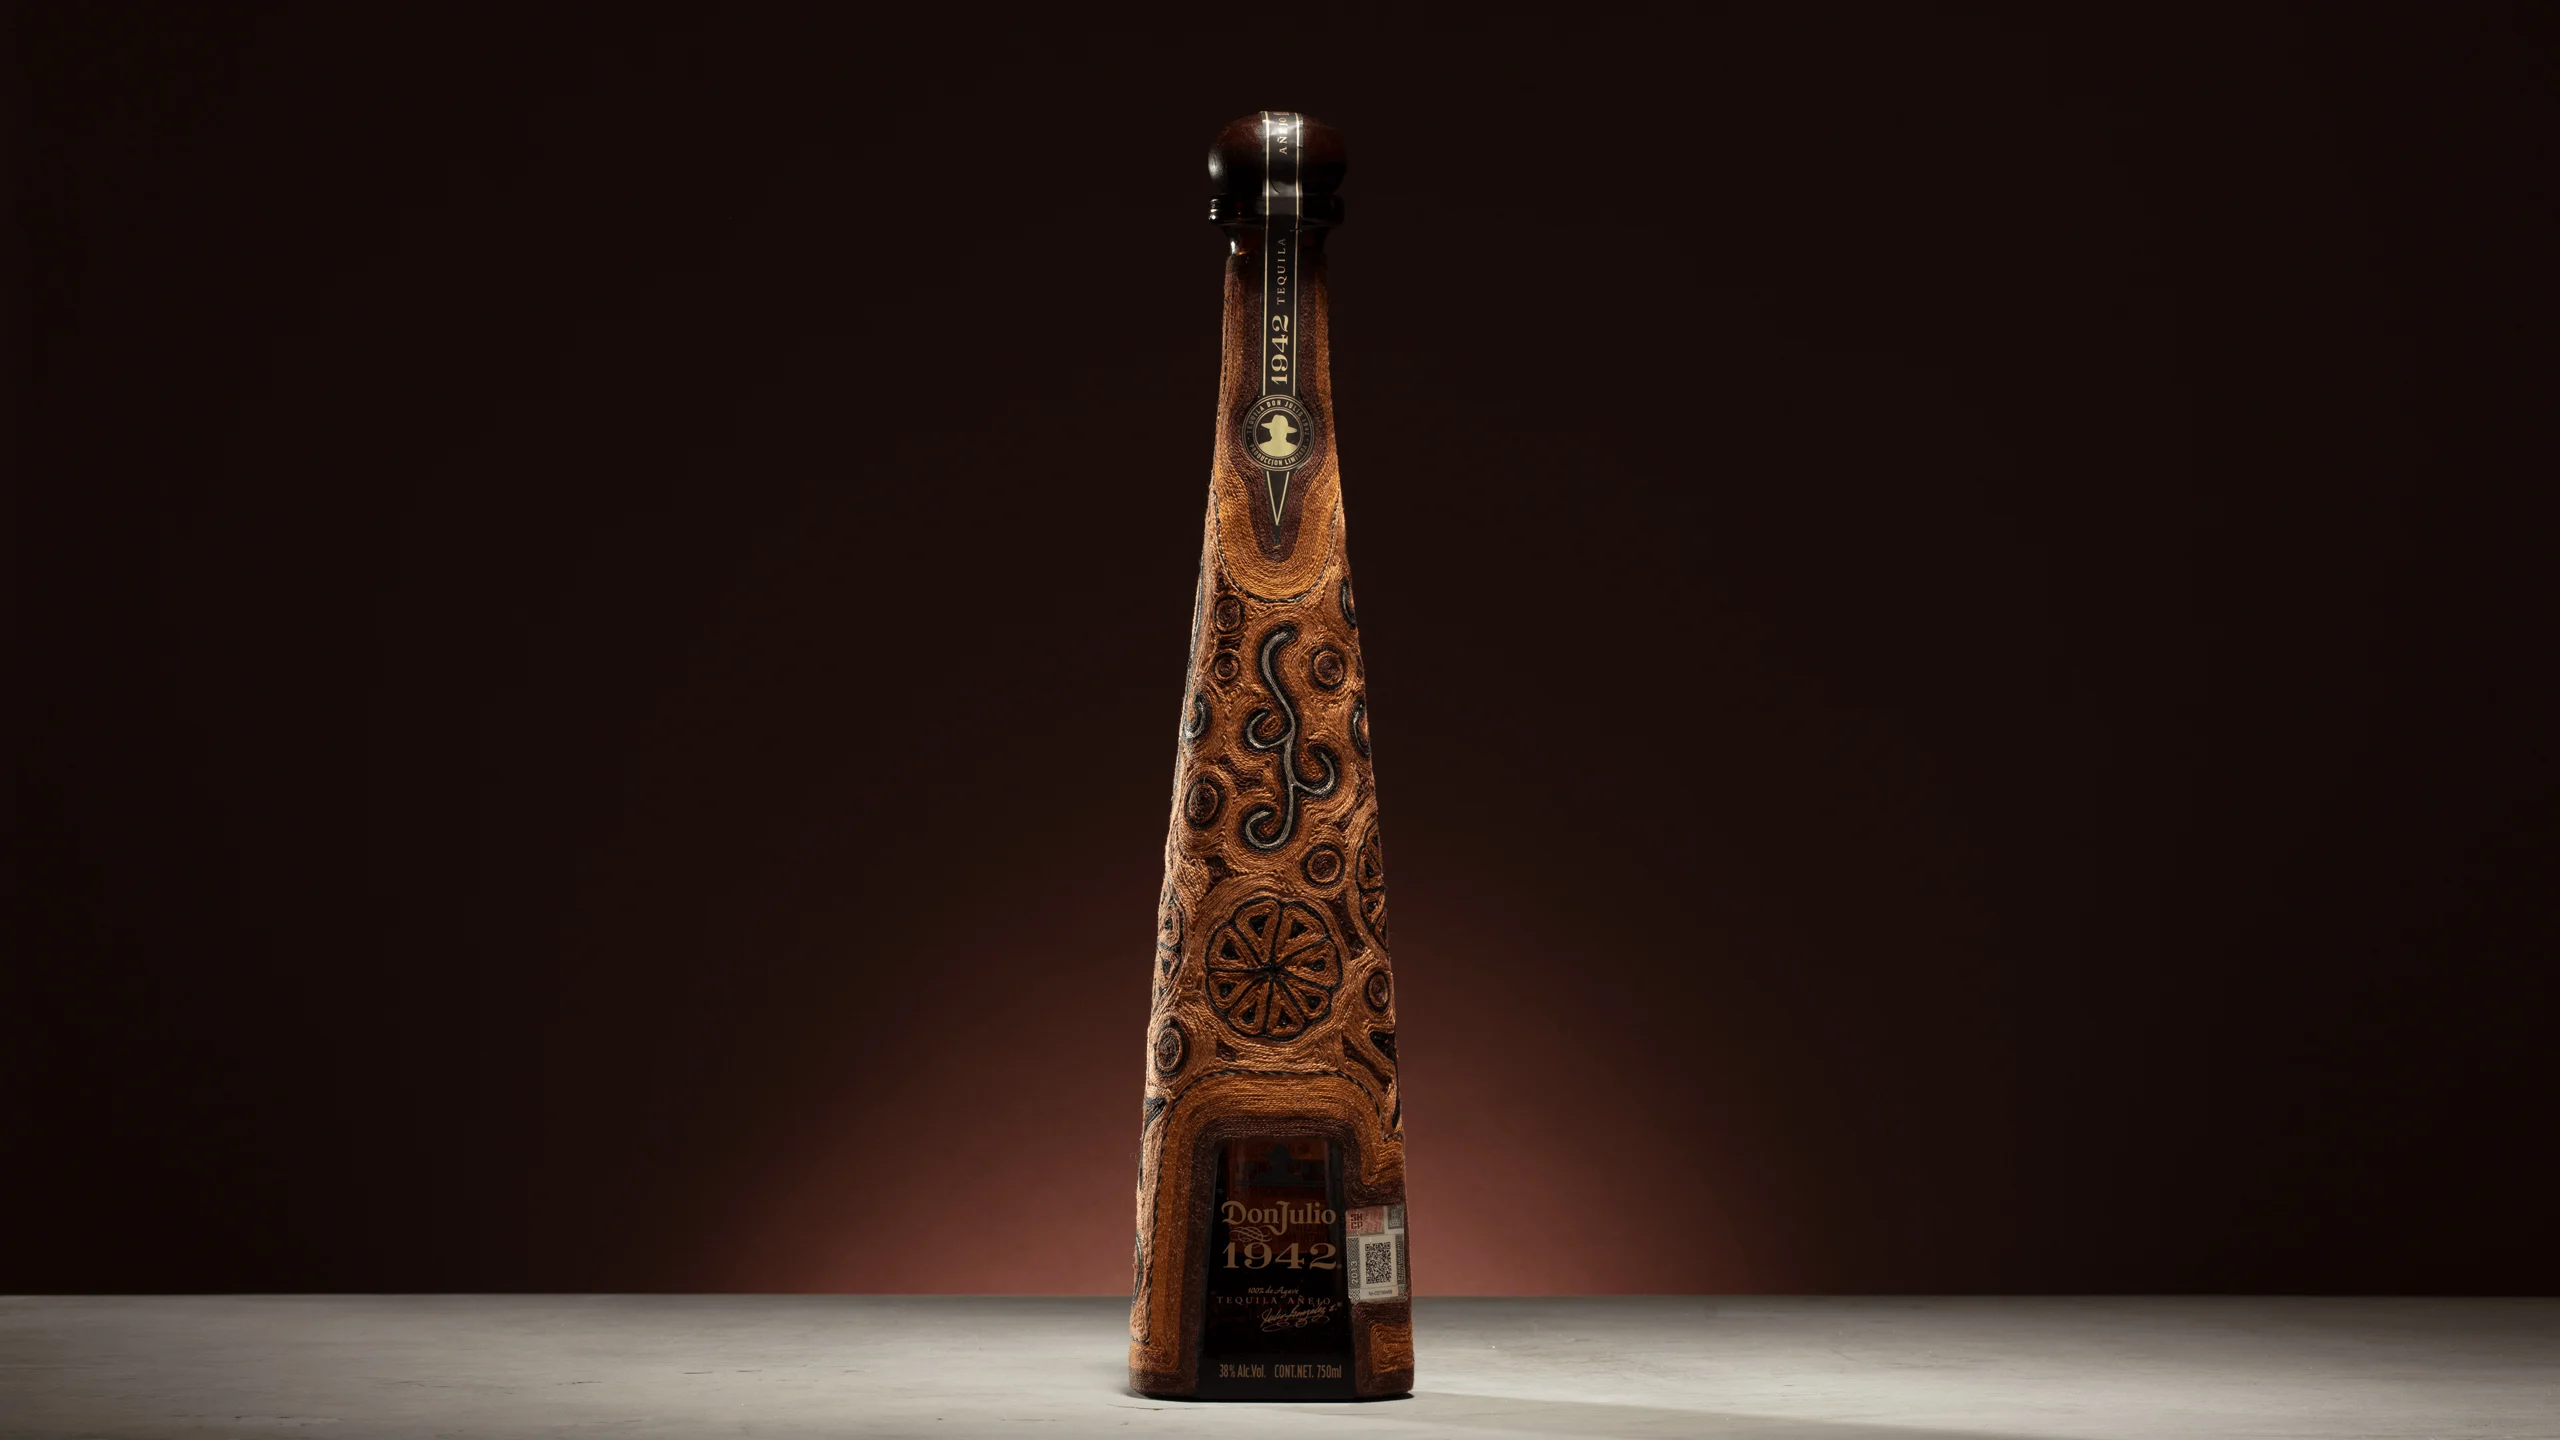 Esta botella de Tequila Don Julio honra la artesanía mexicana